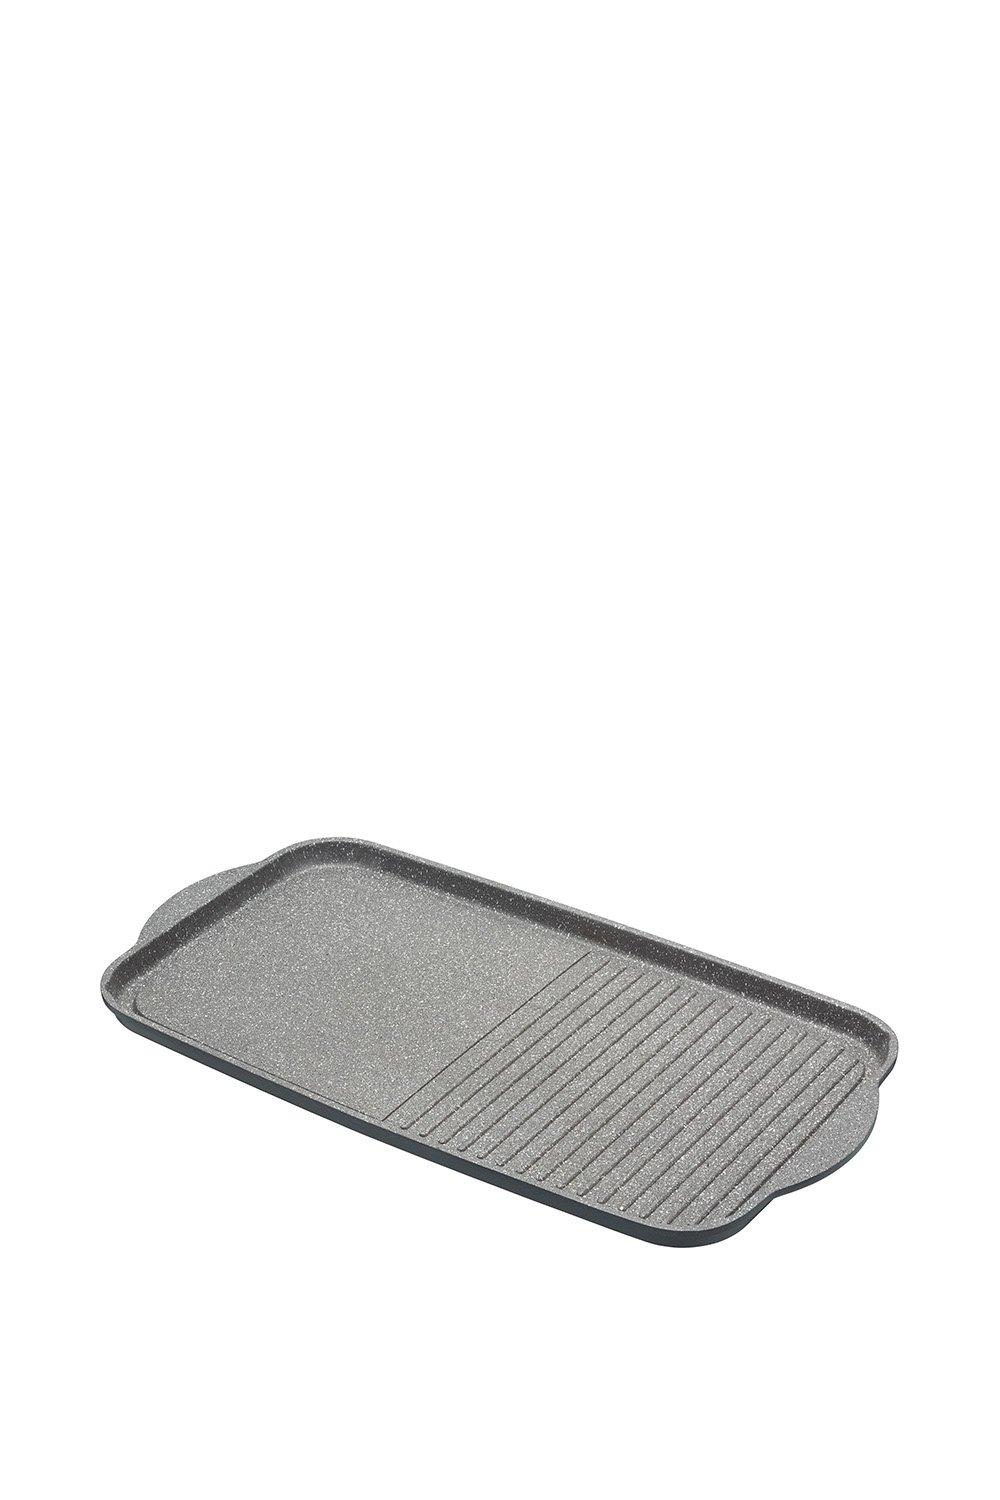 Cast Aluminium 51cm Dual Griddle Tray